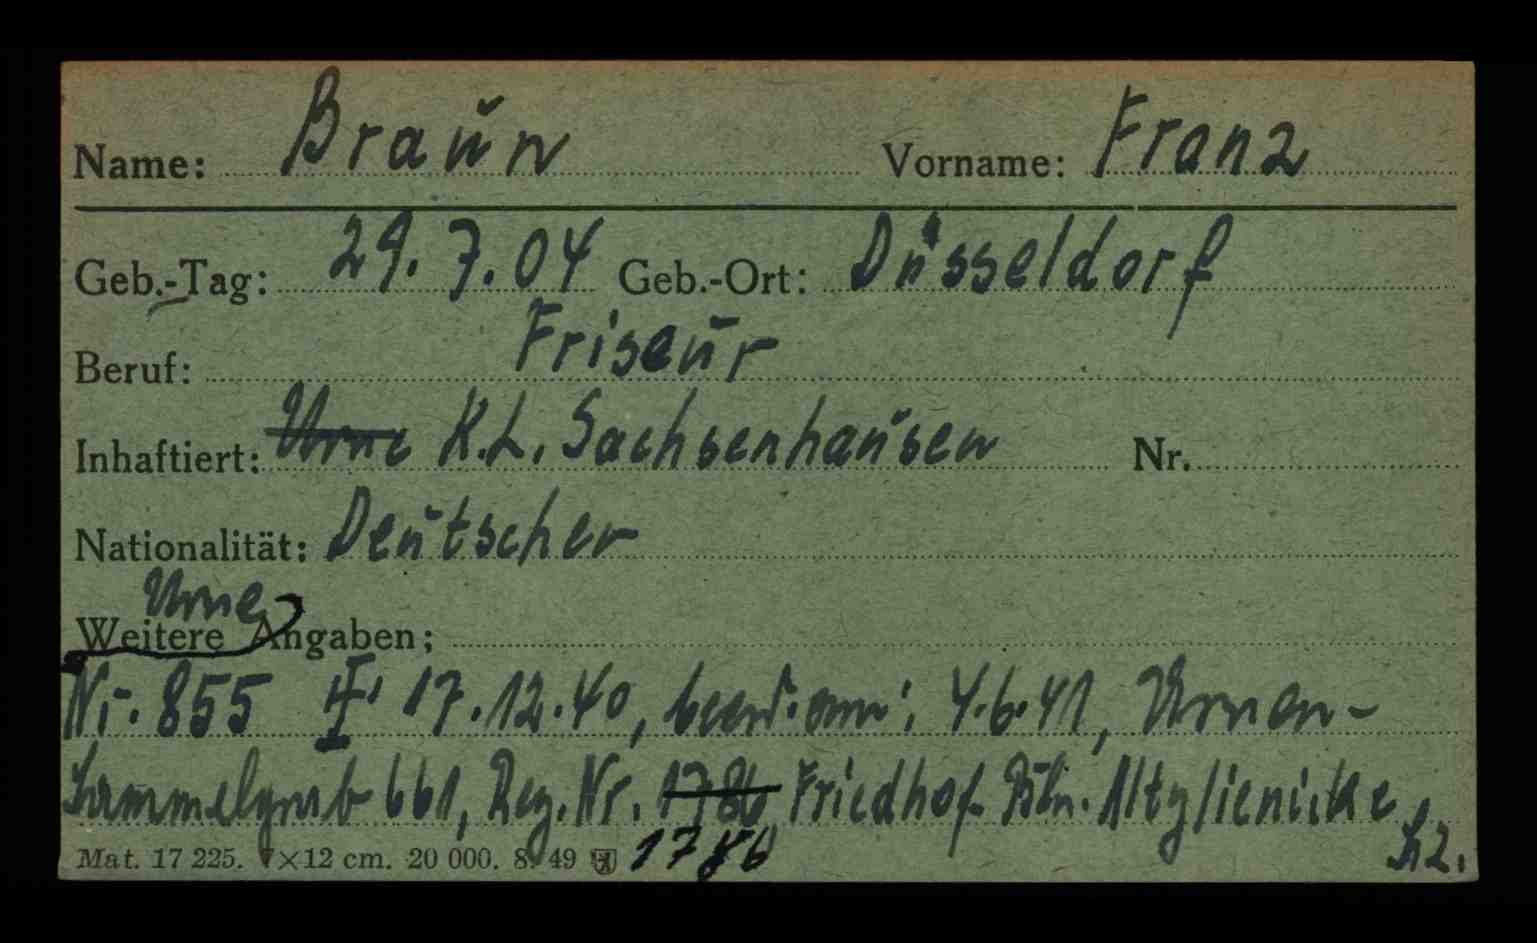 Karteikarten vom Amt für die Erfassung von Kriegsopfern, Berlin